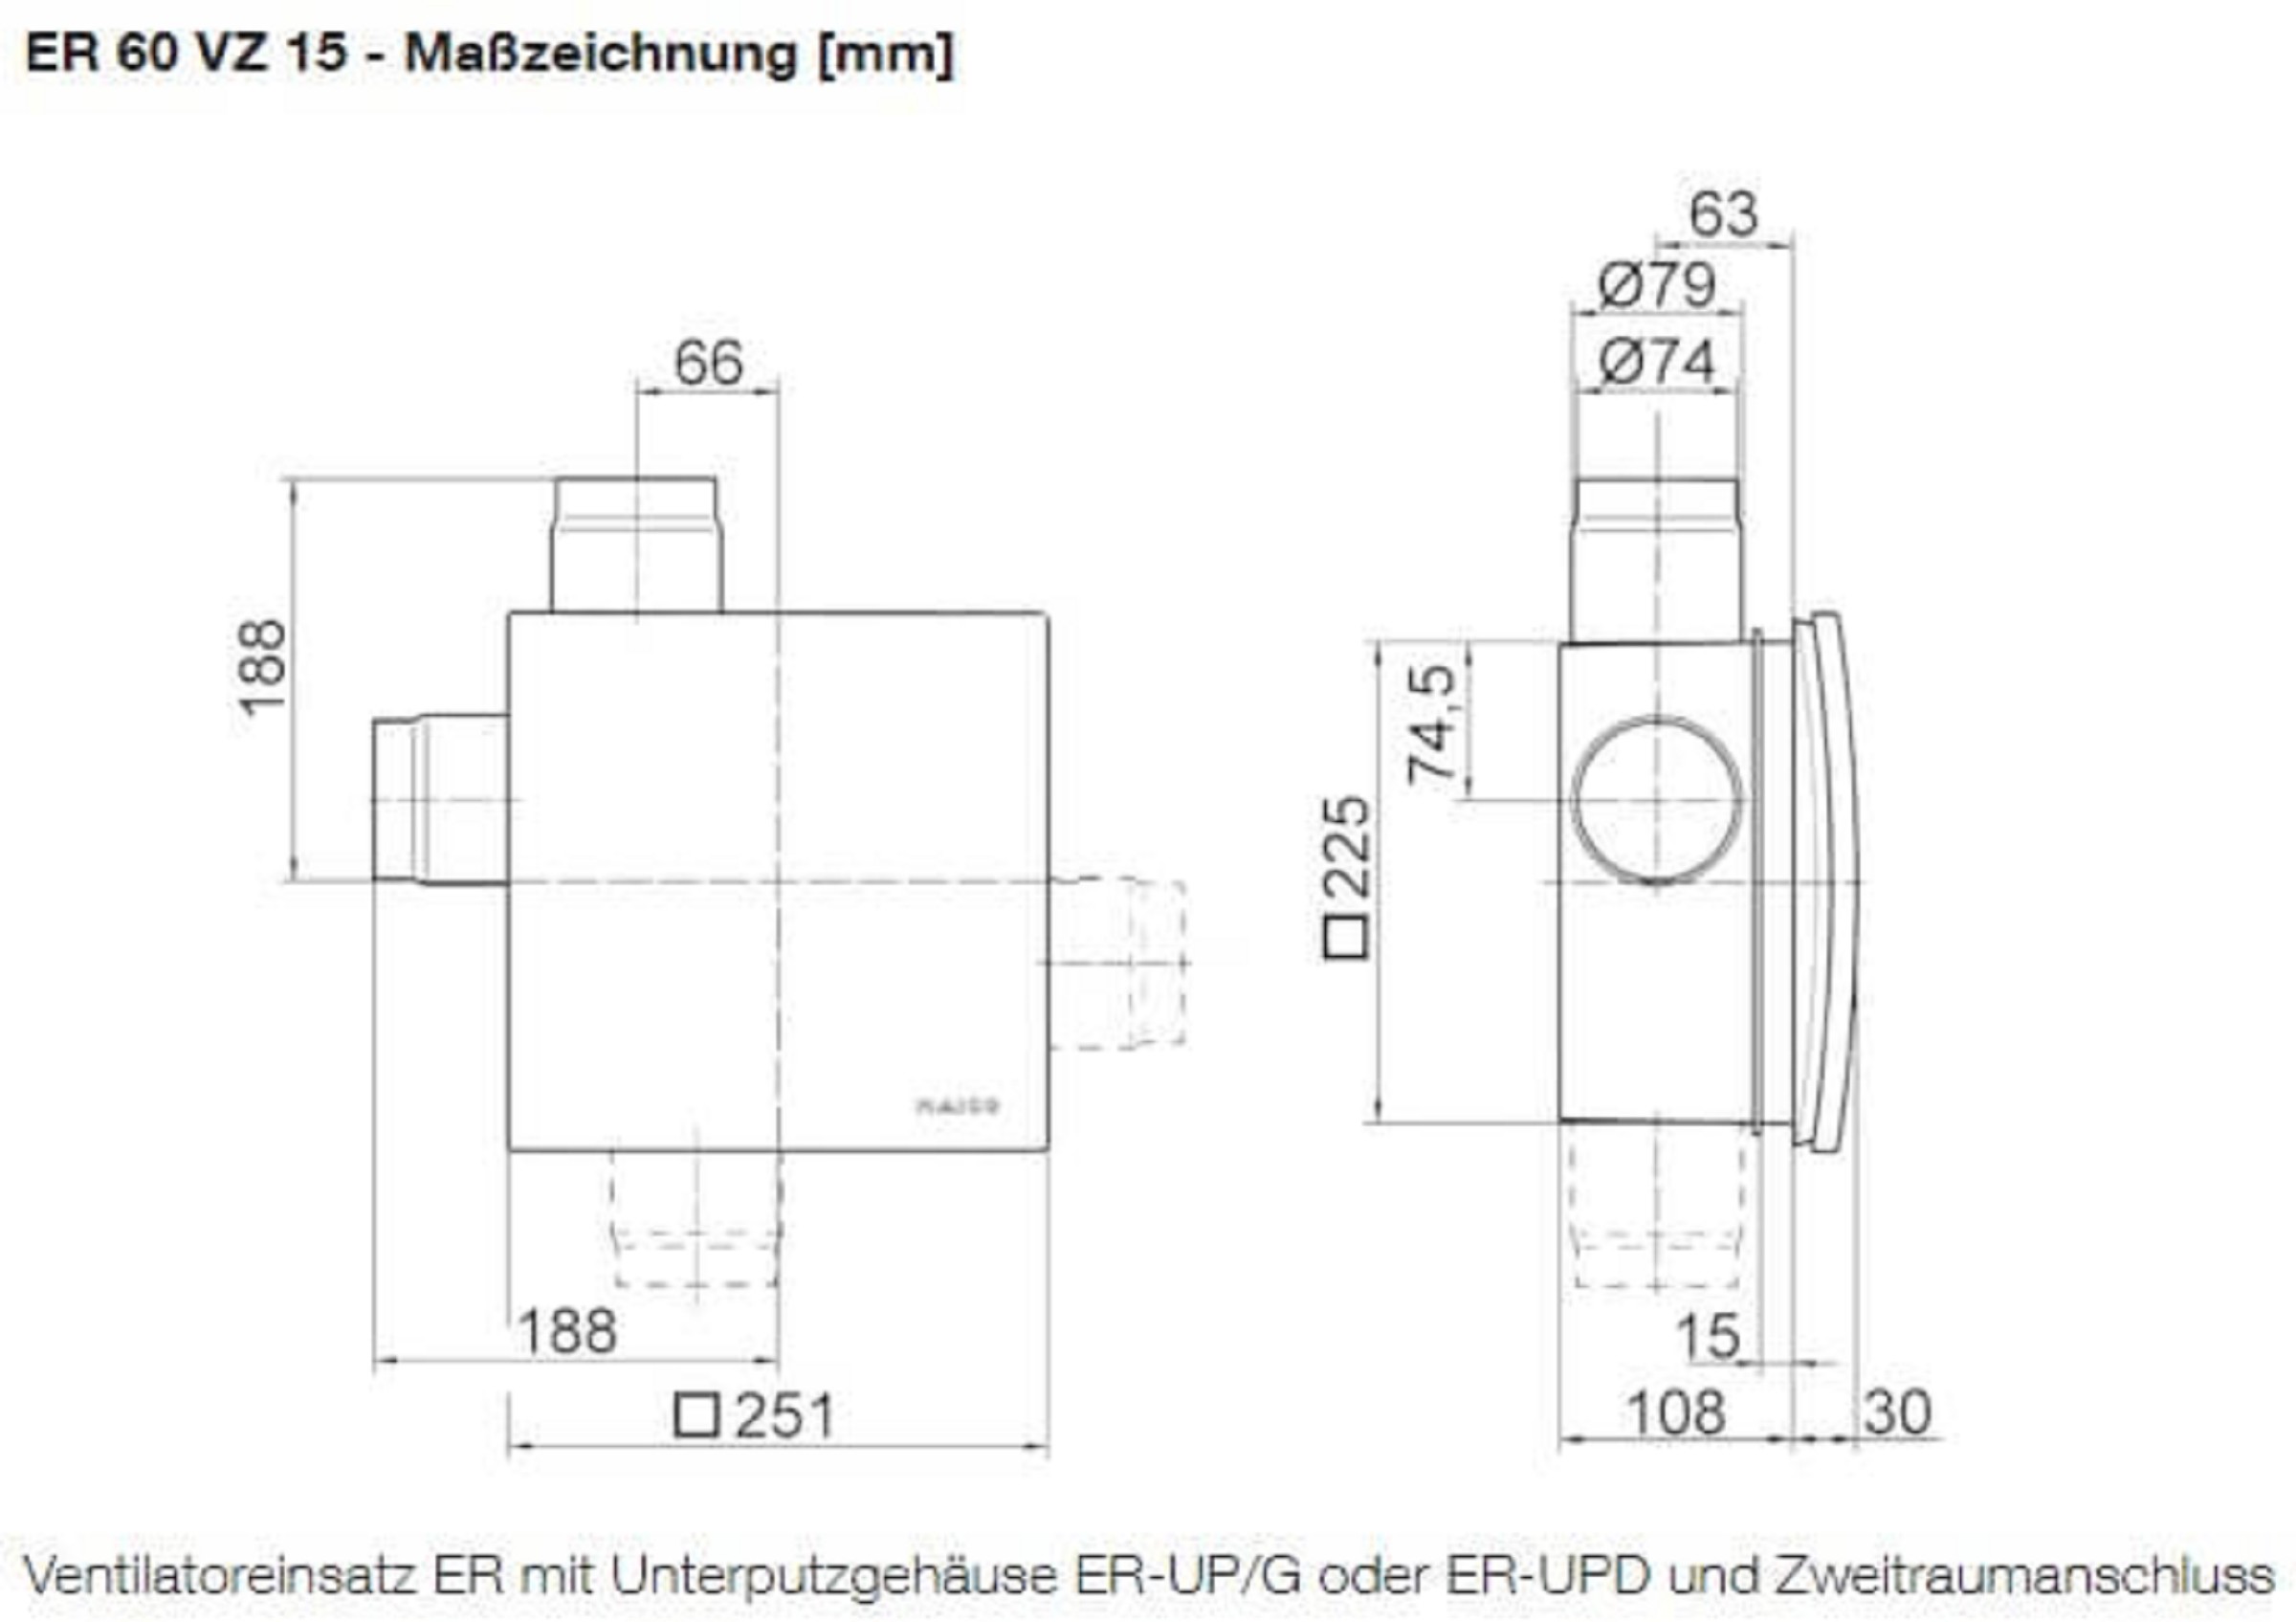 Maico Ventilatoreneinsatz mit Abdeckung ER 60 VZ15, Masszeichnung mit Zweitraumanschluss